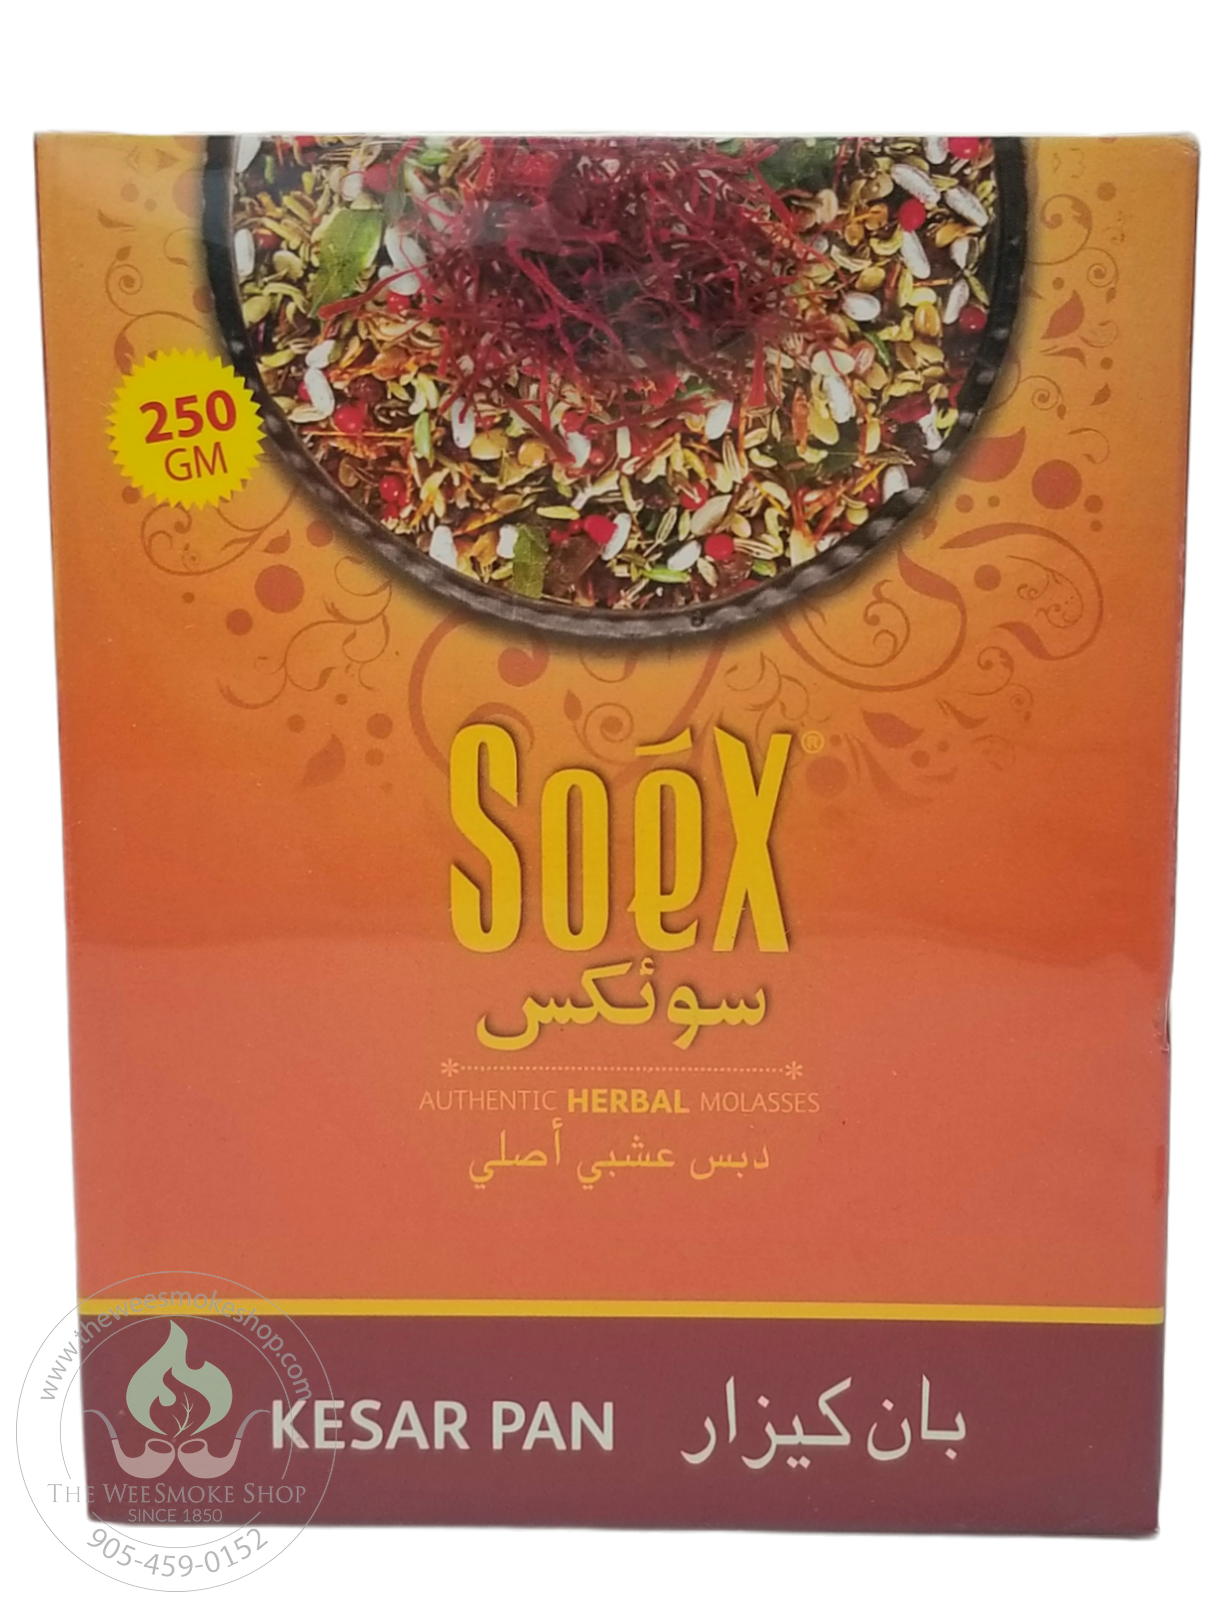 Kesar Pan Soex Herbal Molasses (250g)-Hookah accessories-The Wee Smoke Shop